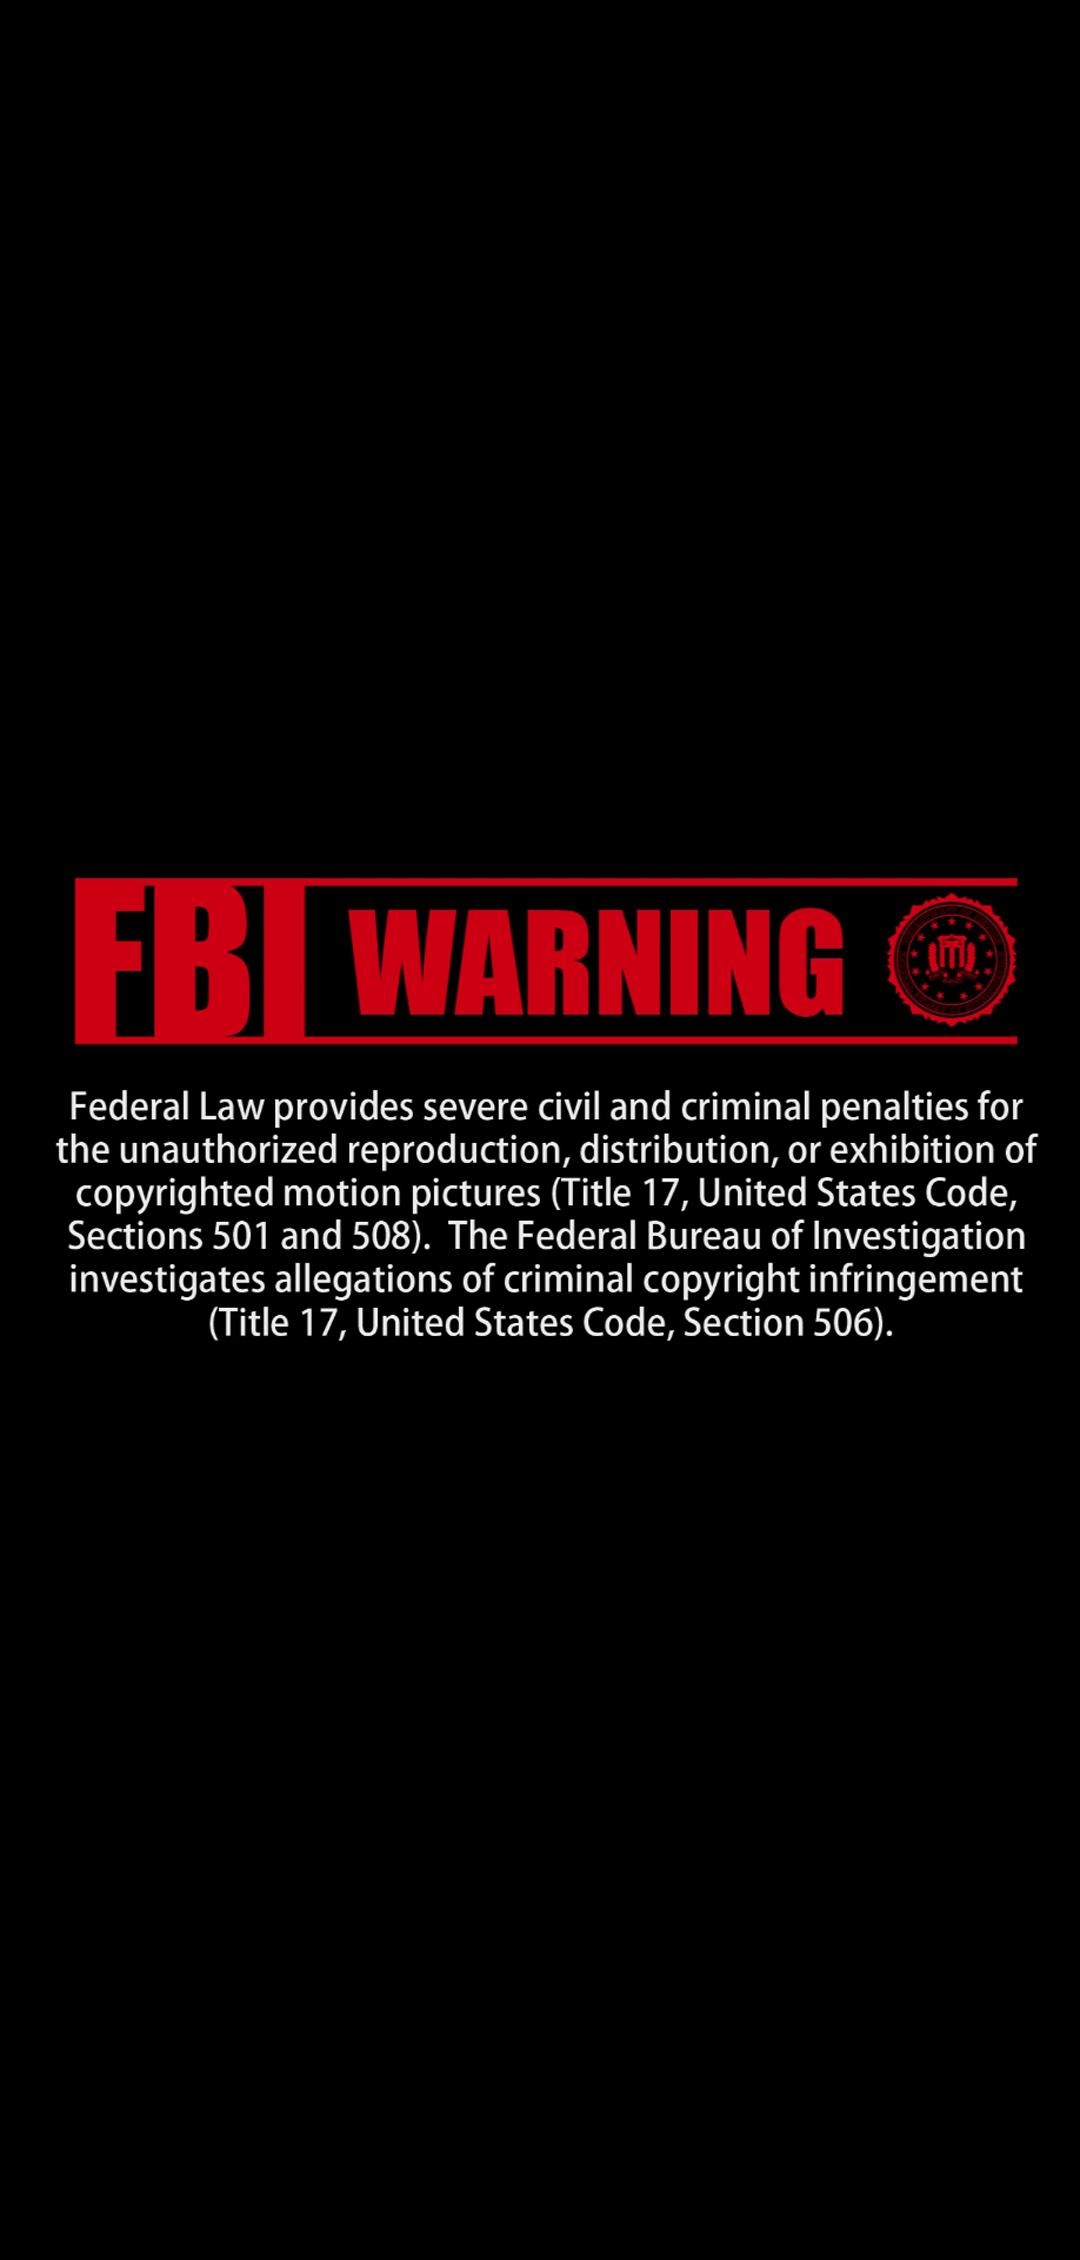 FBI WARNING文字壁纸